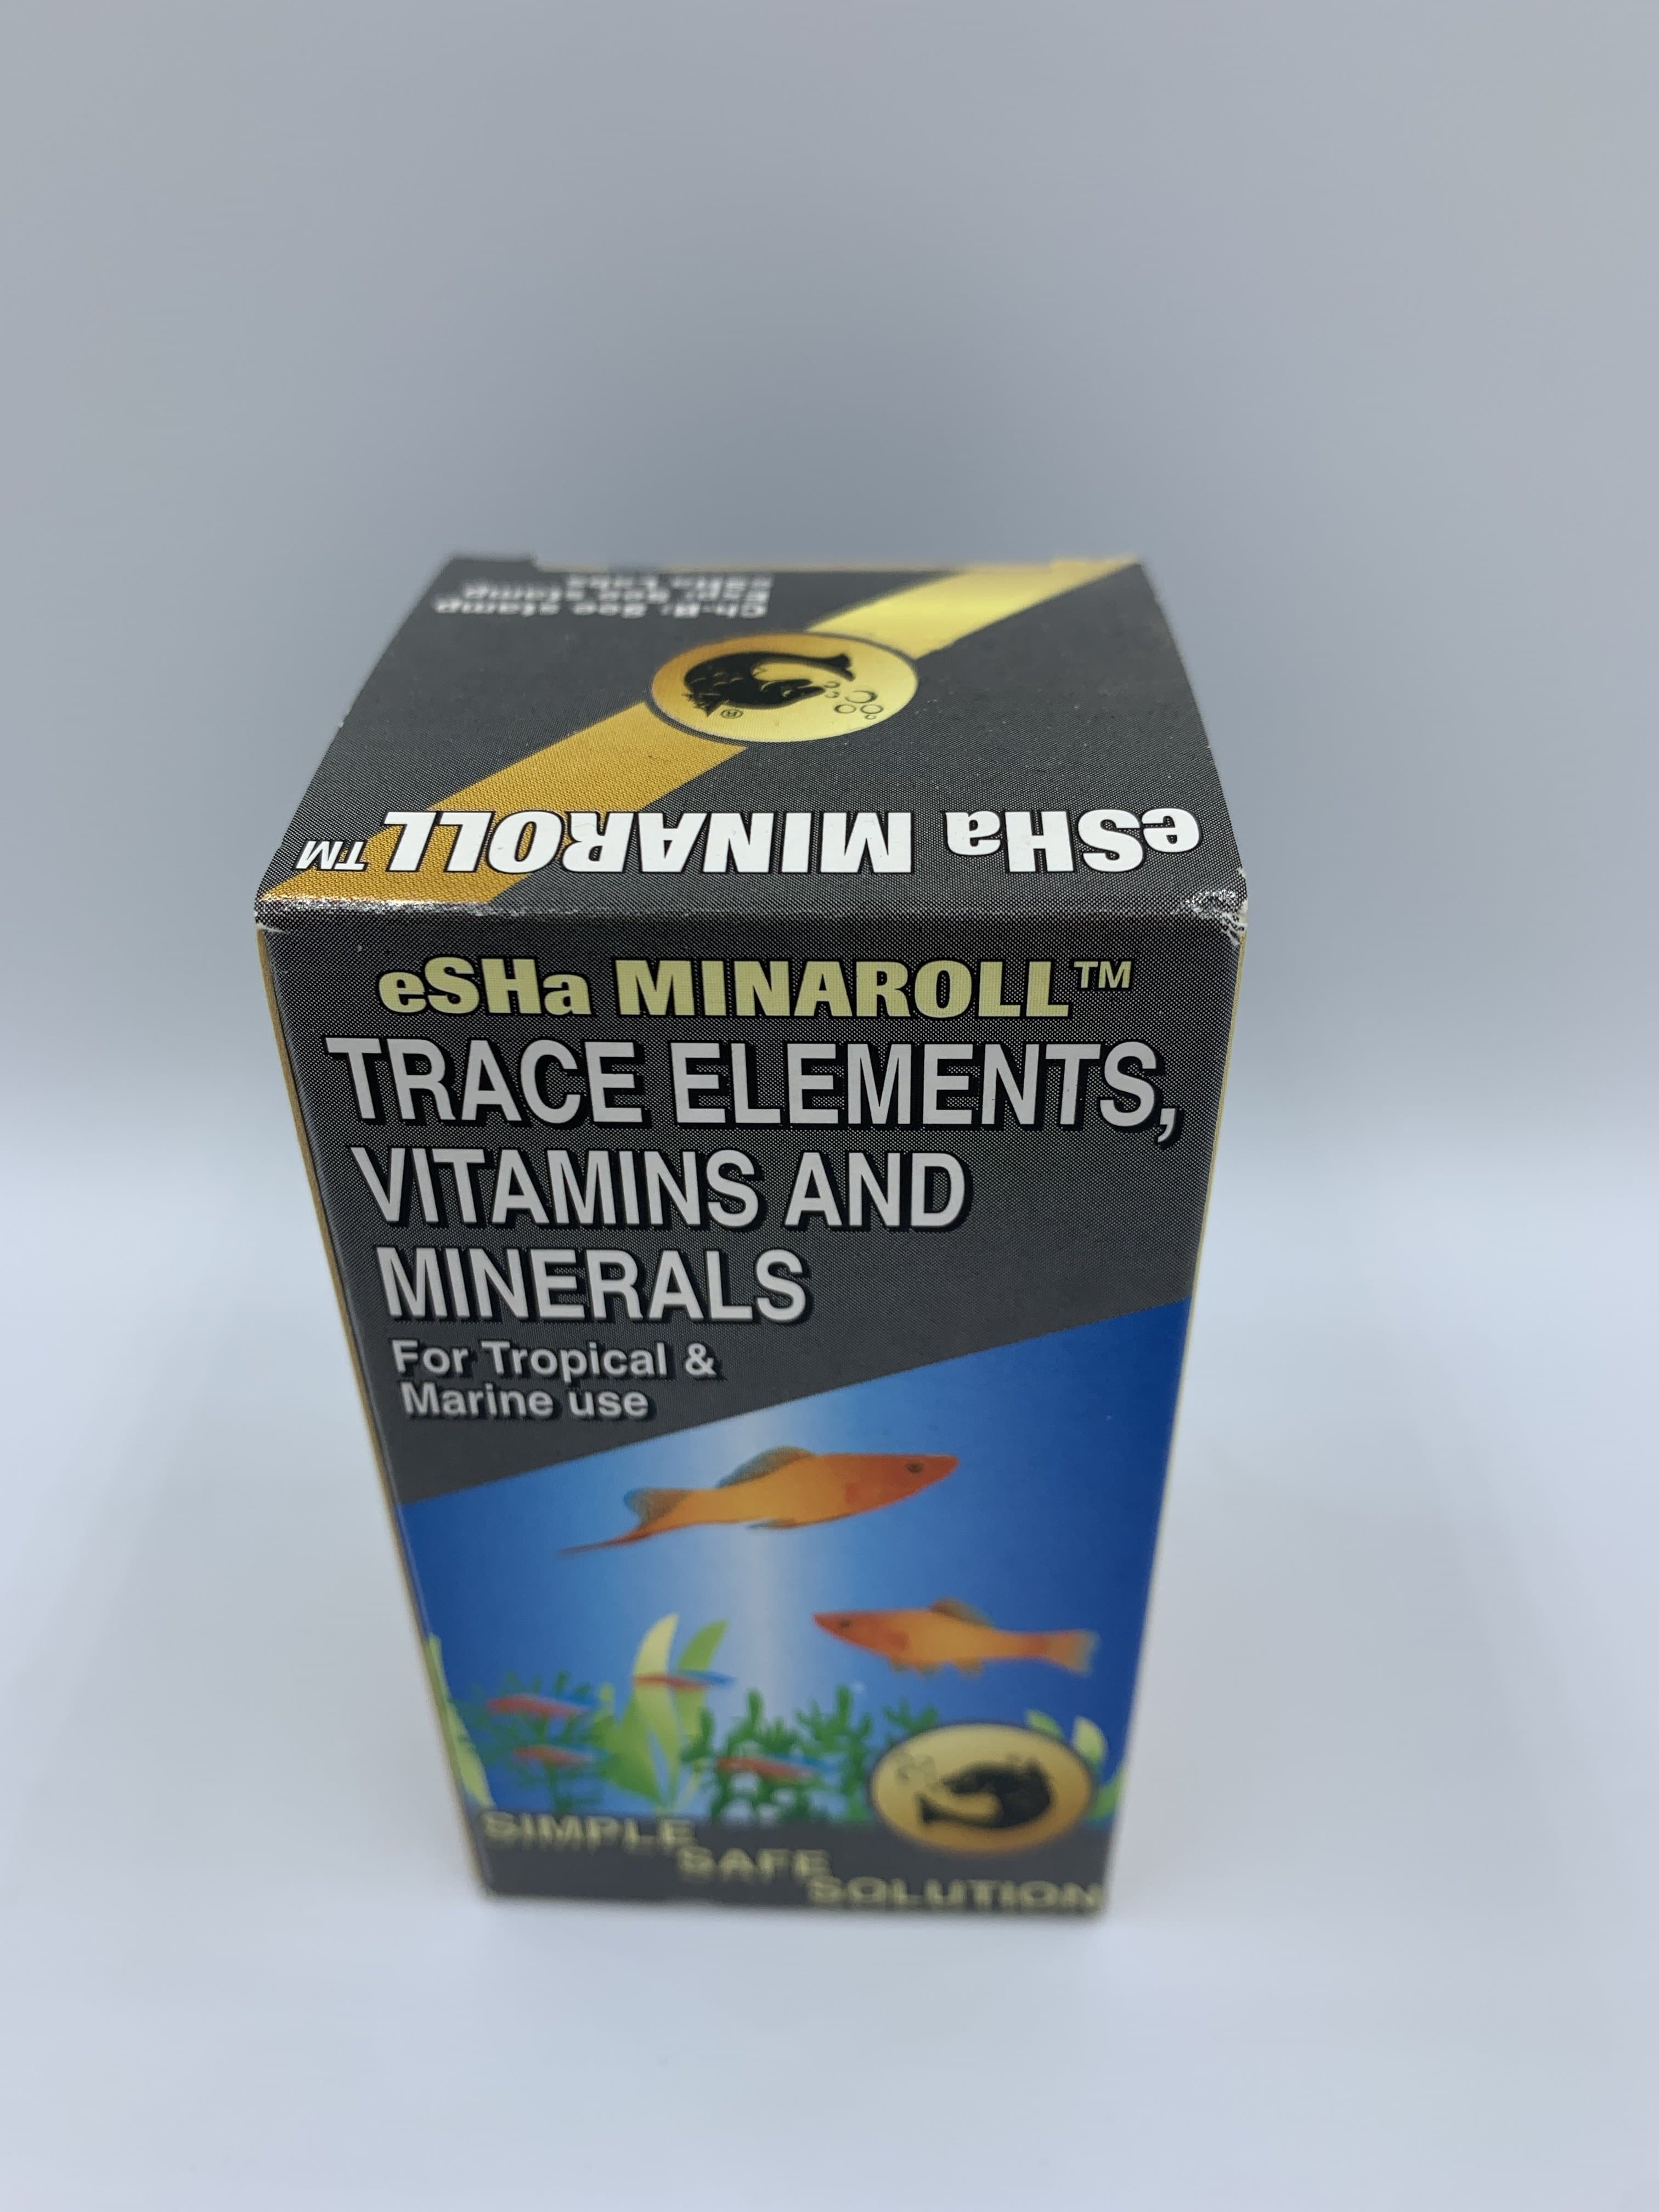 eSHa Minaroll Trace Elements, Vitamins & Minerals 20ml £6 Tropical Supplies North East